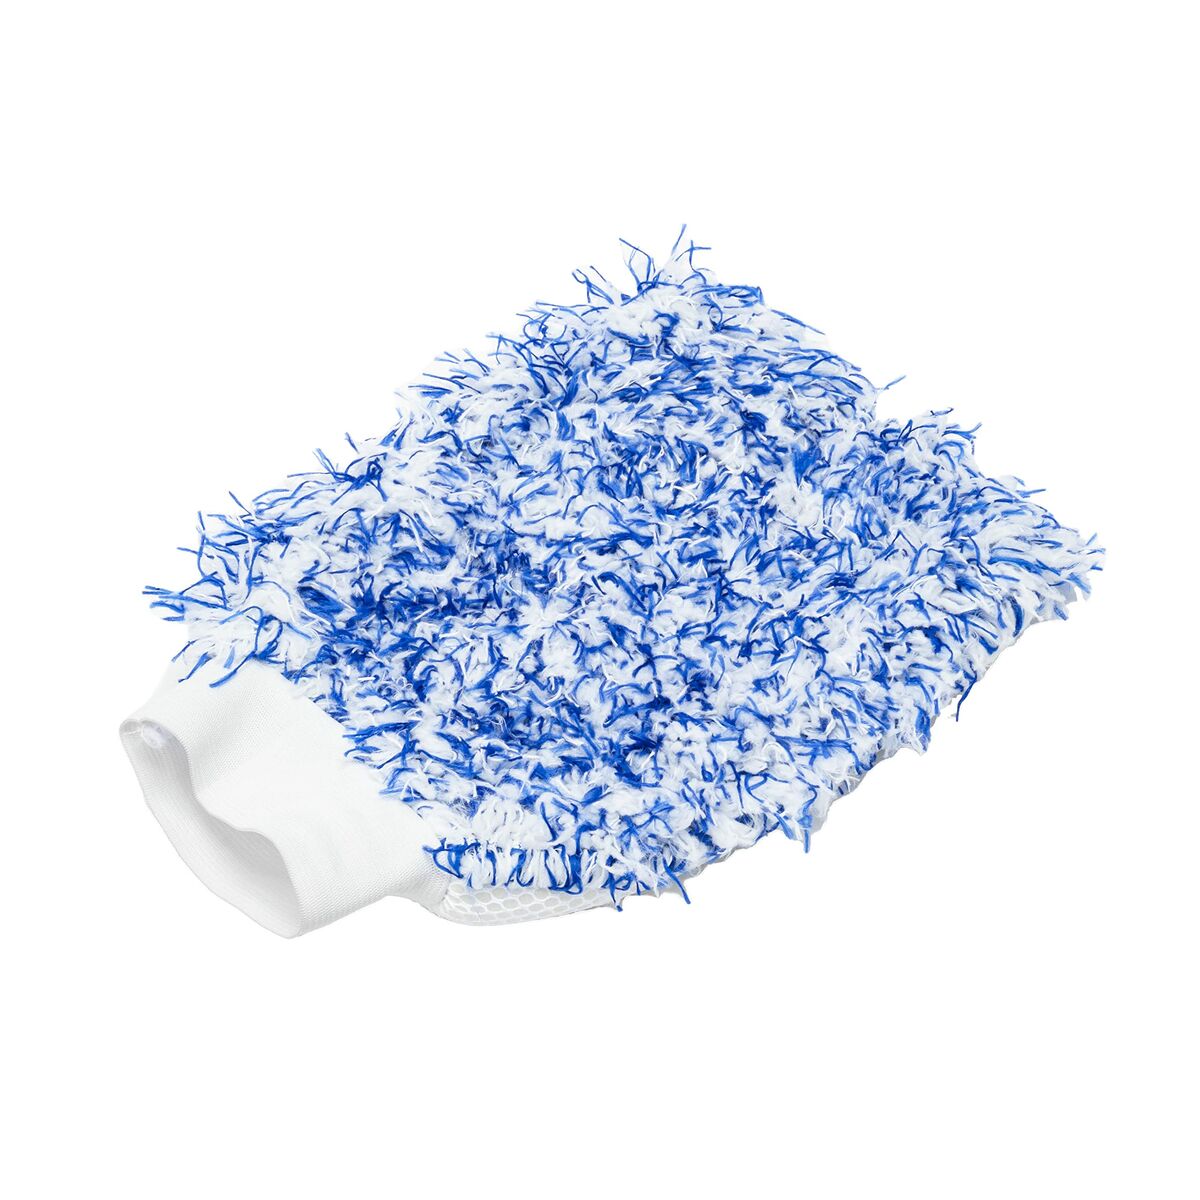 Microfibre Cleant Cloth Motul MTL111022 Синя / бяла памучна ръкавица за измиване те не се надраскват или повредят повърхностите